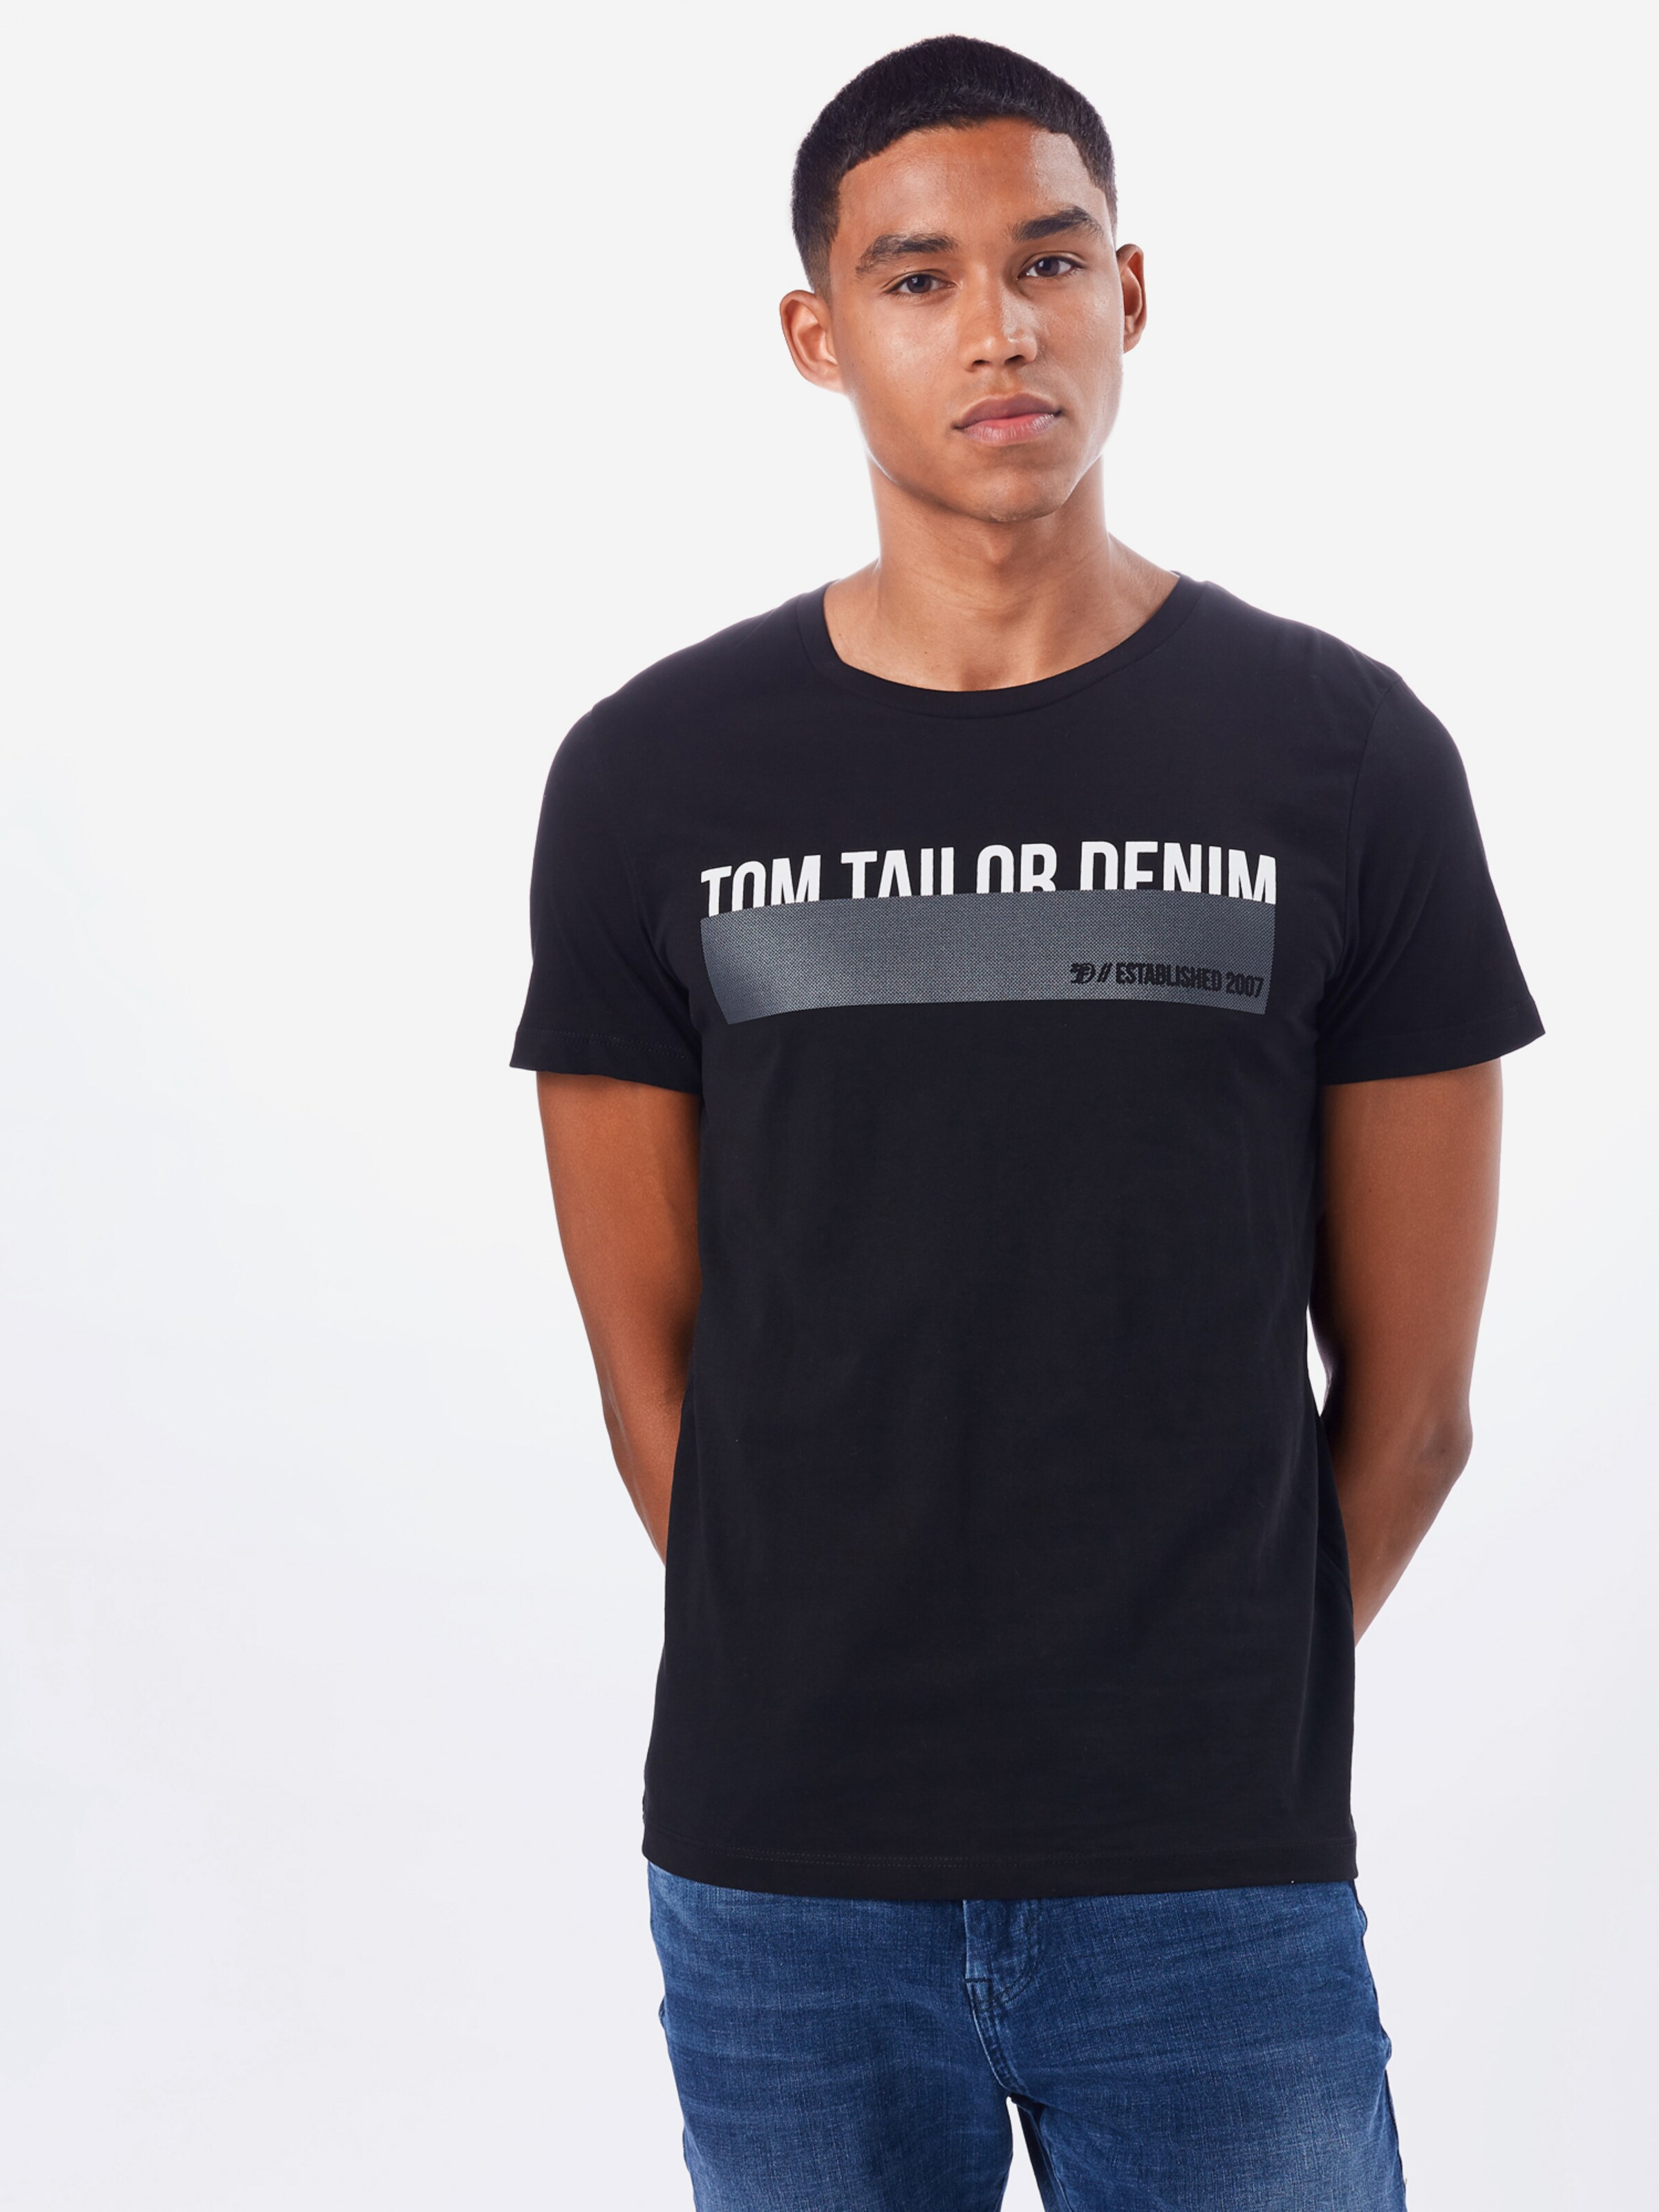 Männer Shirts TOM TAILOR DENIM T-Shirt in Schwarz - IQ19385